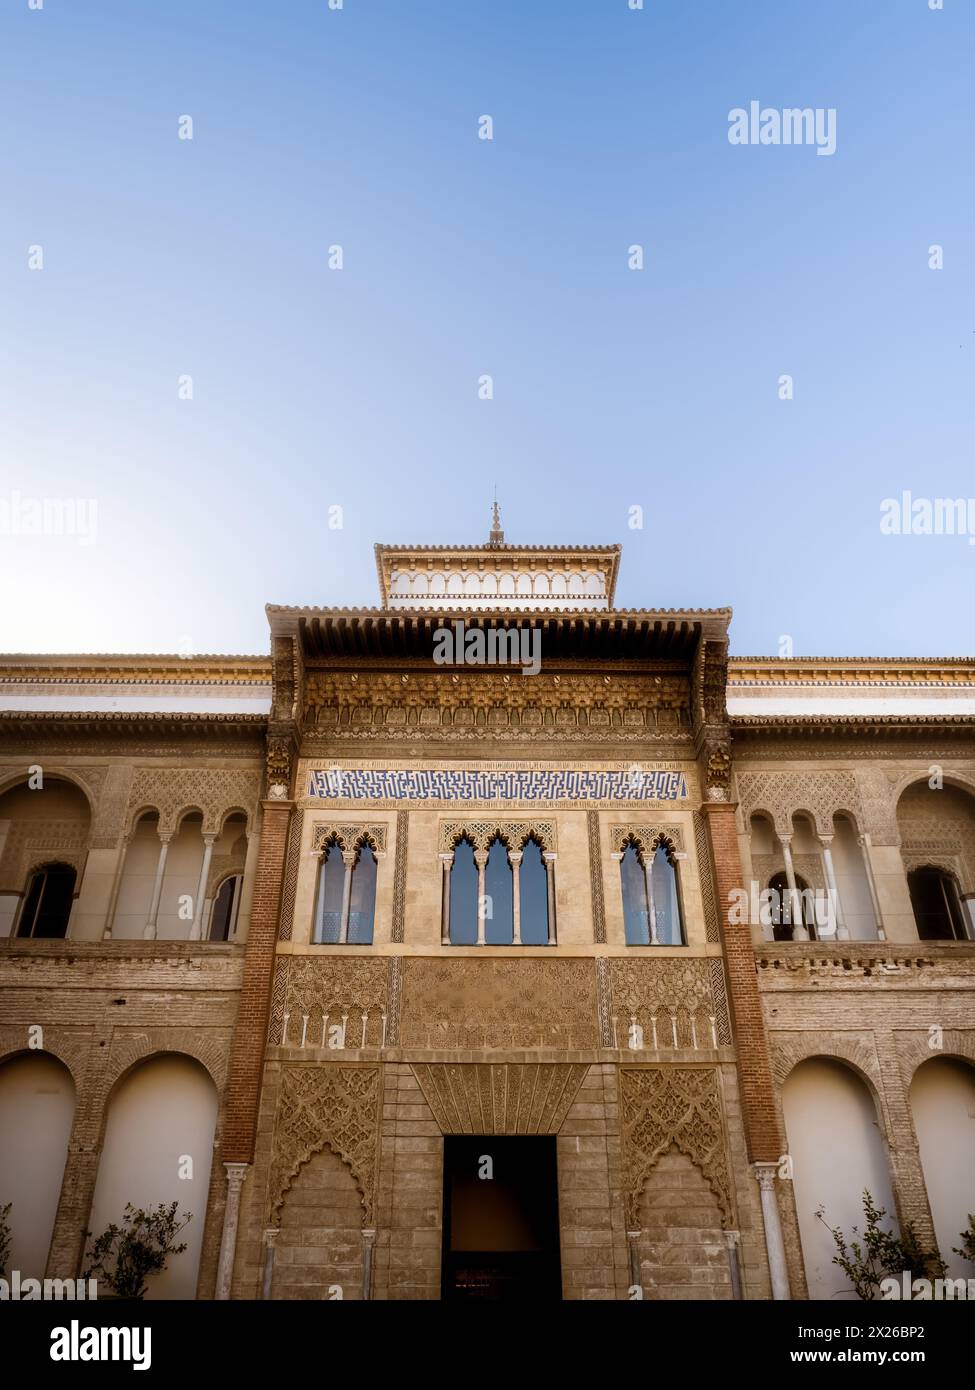 La vista frontale del Palazzo reale nel Real Alcazar de Seville, dal Patio de la Monteria, Andalusia, Spagna Foto Stock